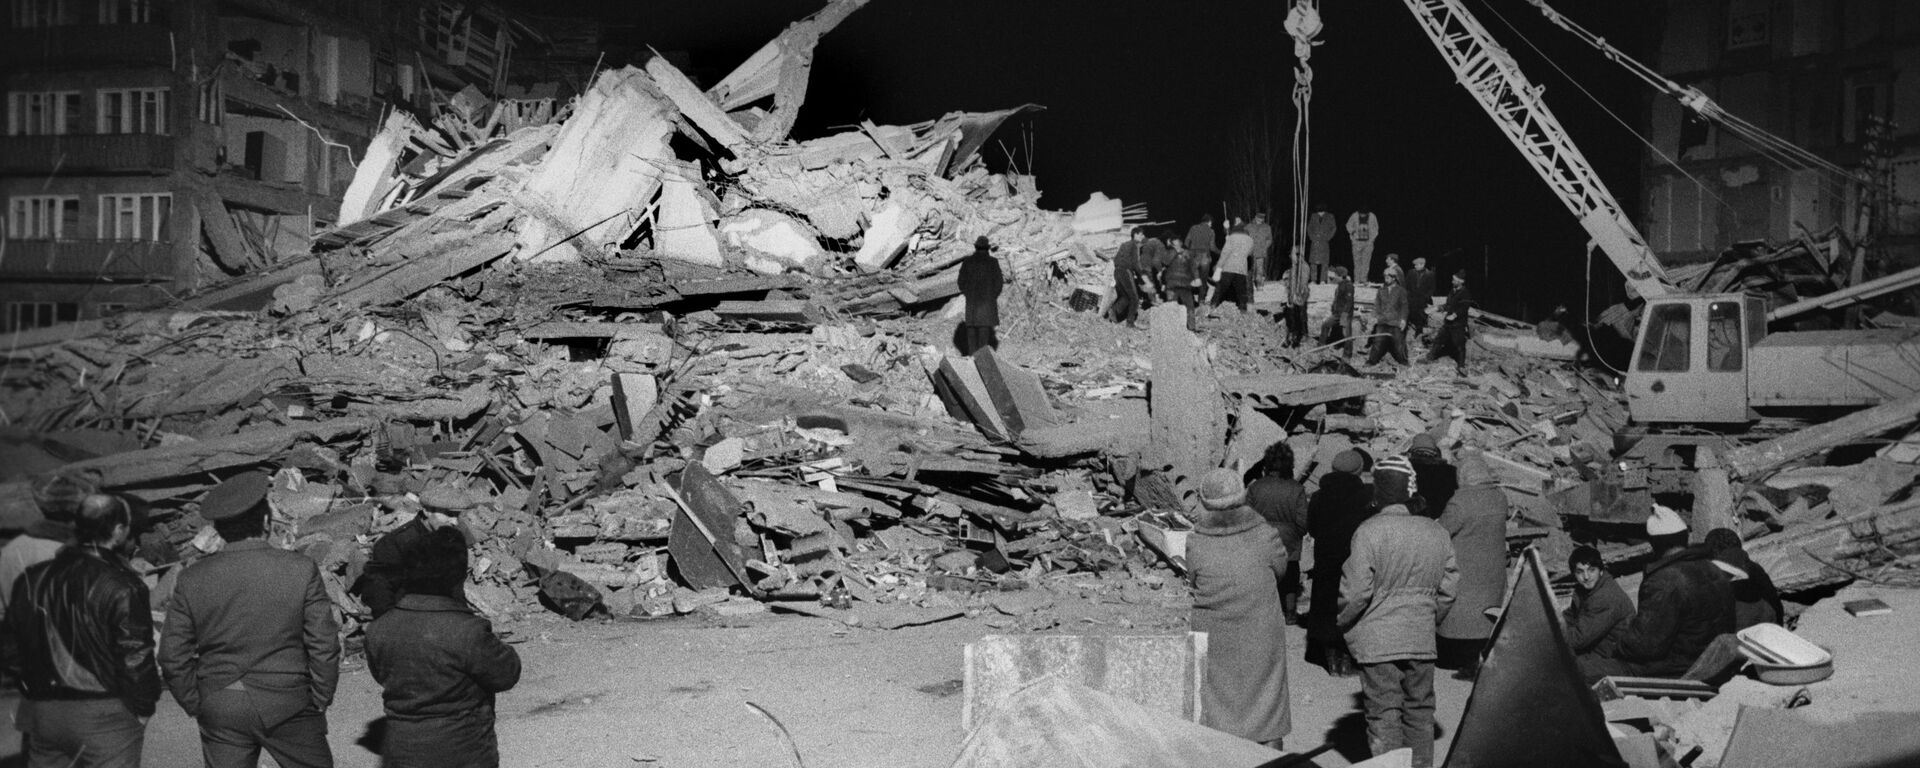 Землетрясение в Армении 1988 года - Sputnik Абхазия, 1920, 07.12.2020